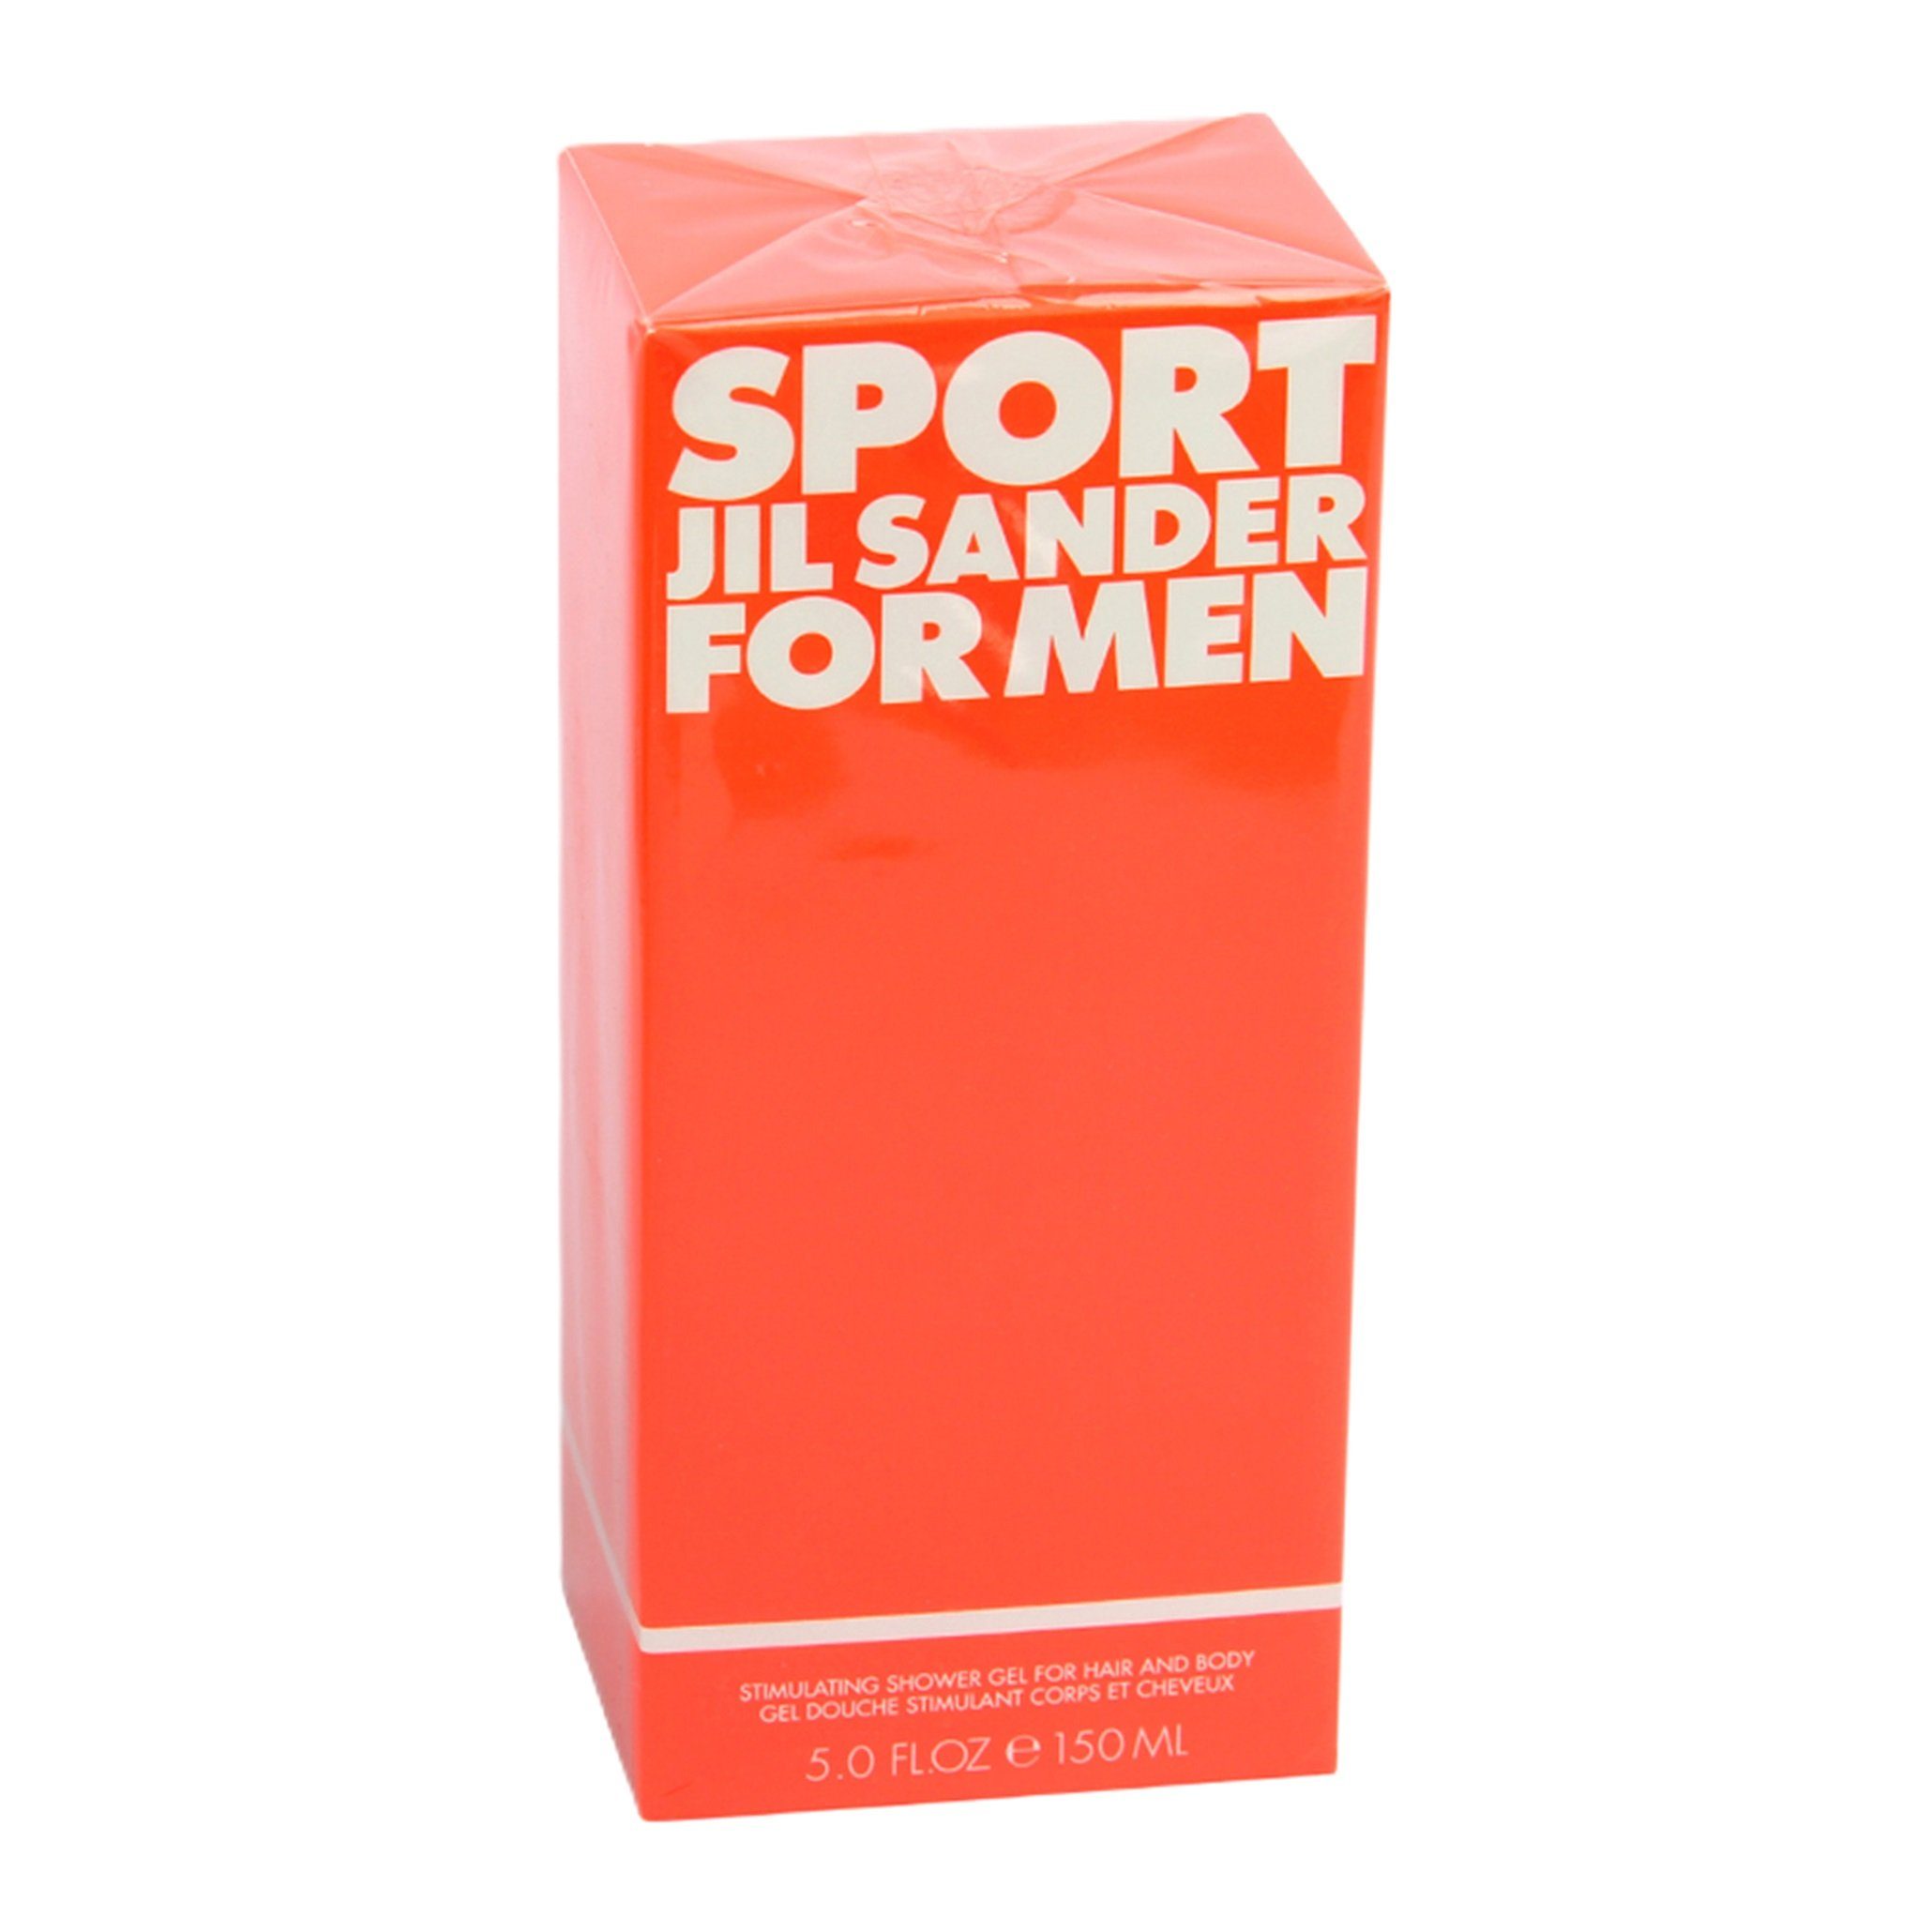 JIL SANDER Duschgel Jil Sander Sport for Men Shower Gel for Hair and Body 150ml